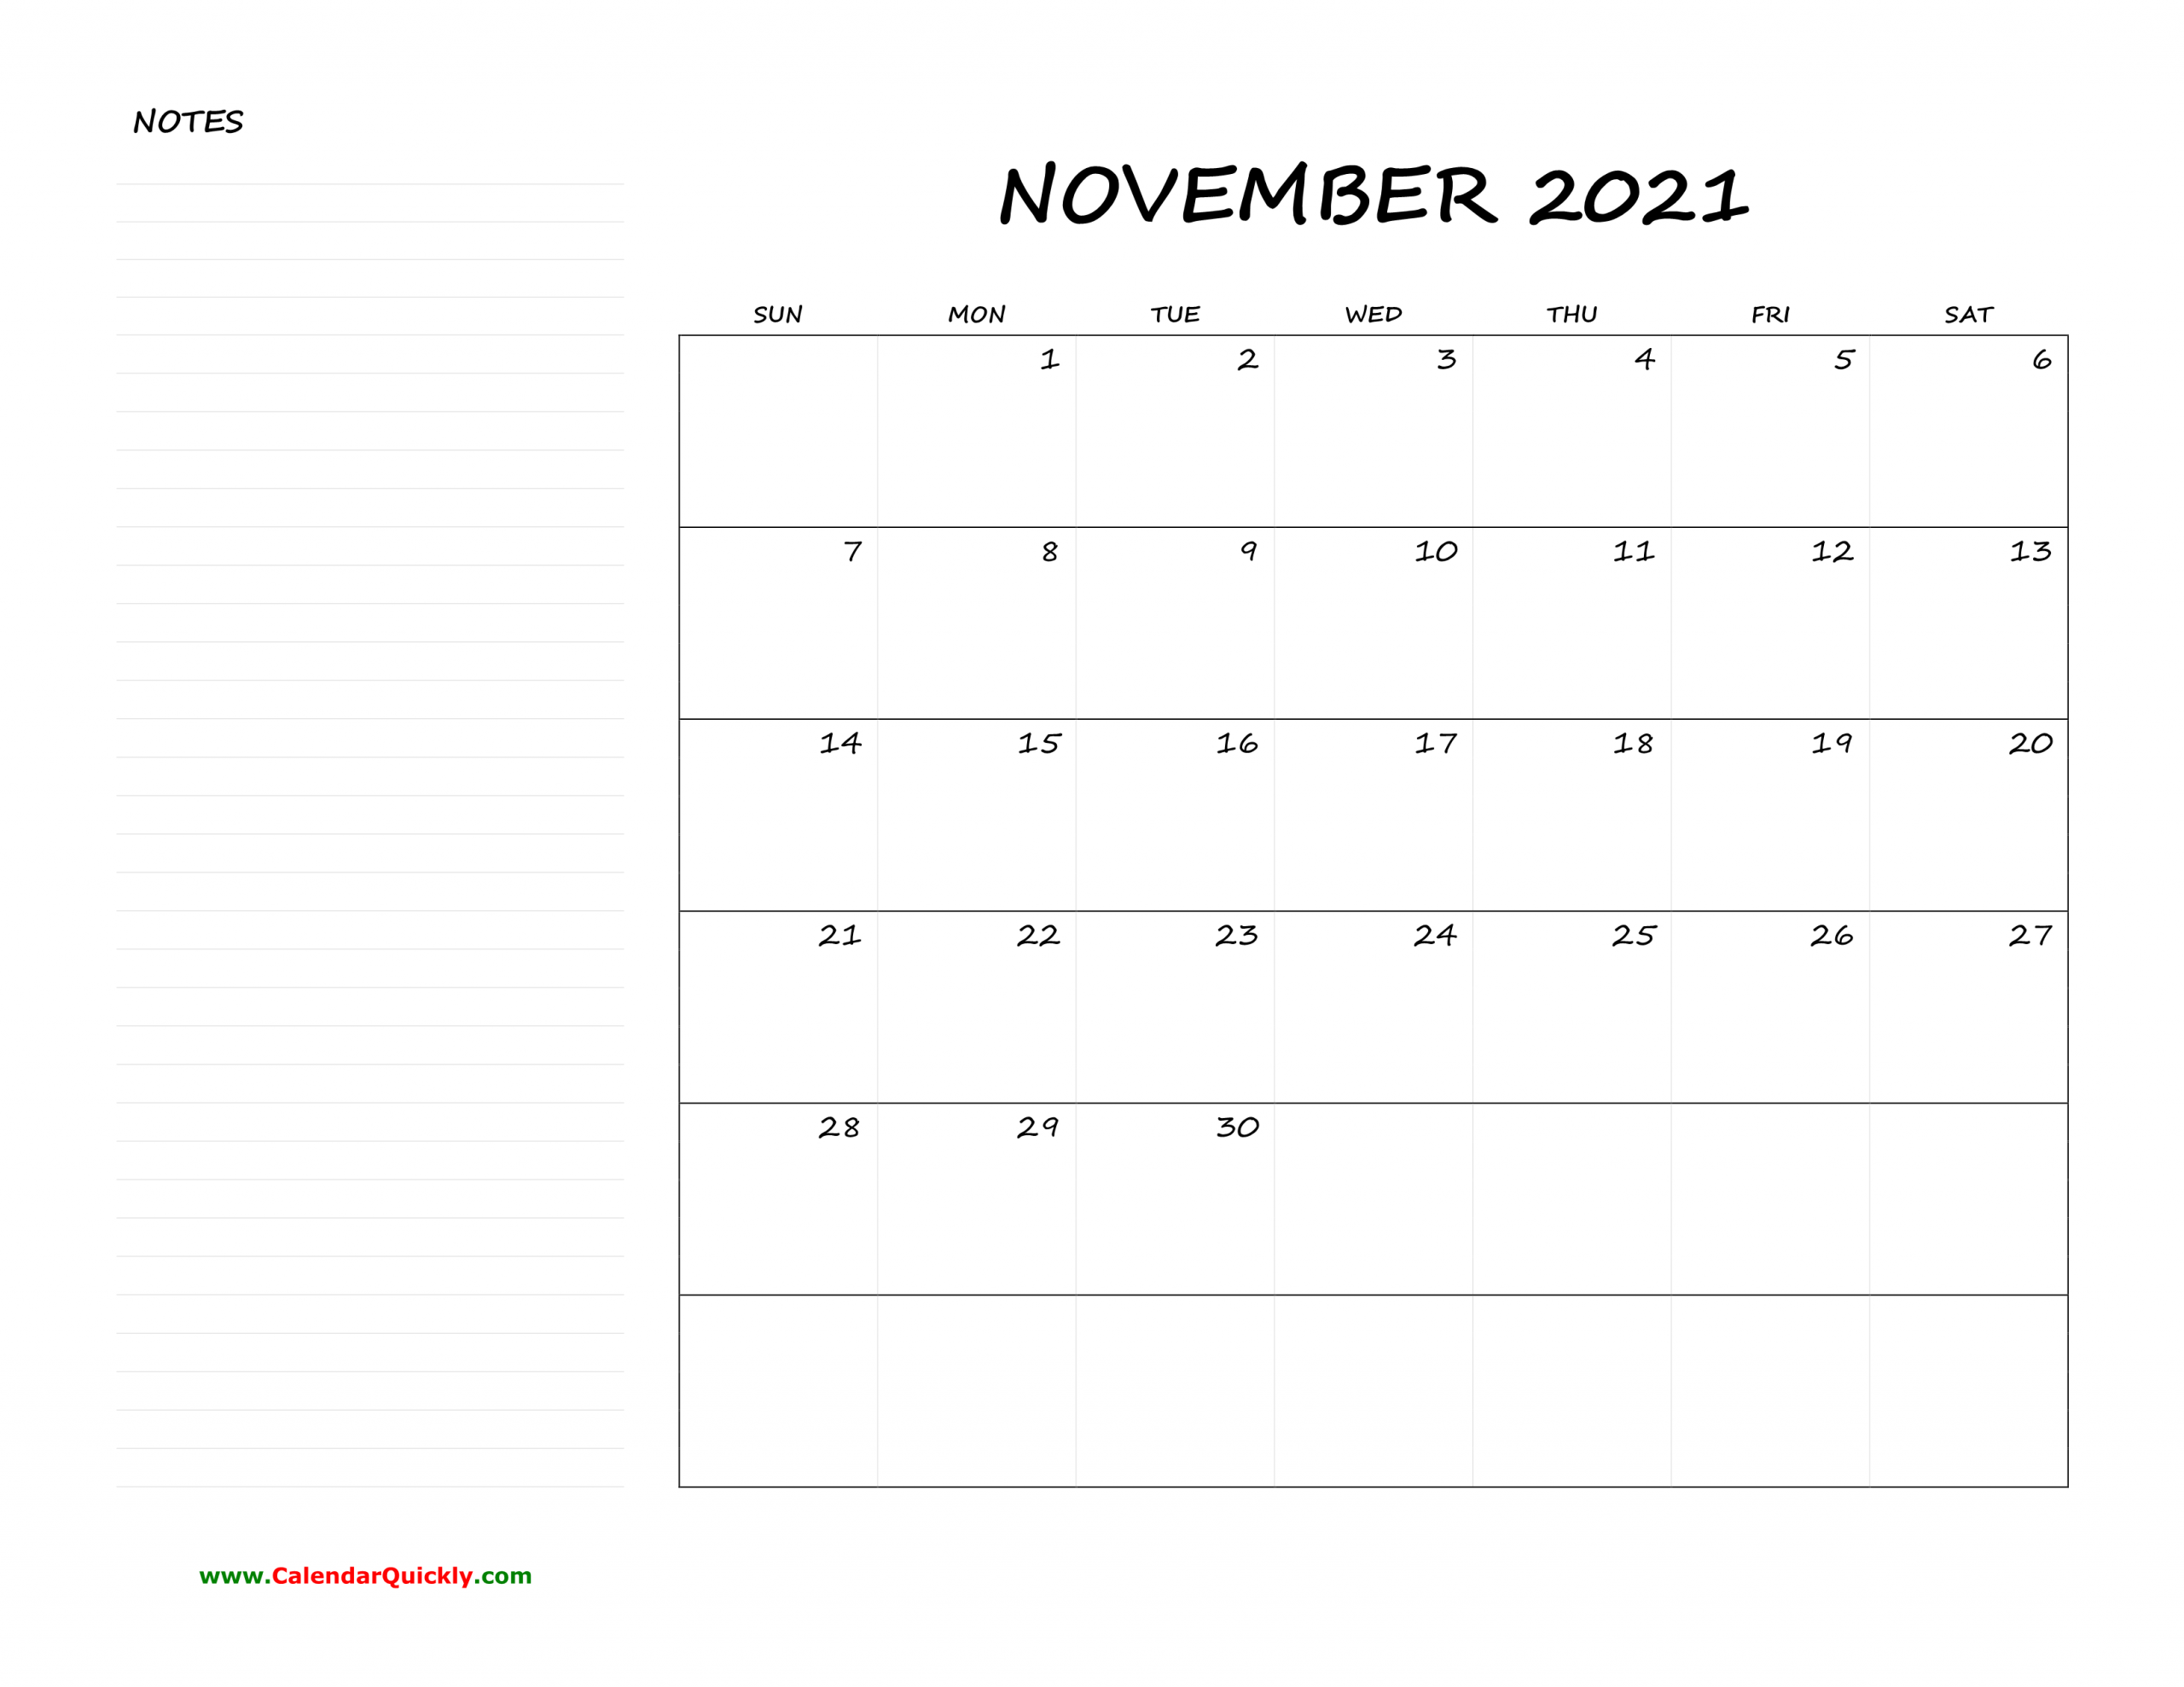 November Blank Calendar 2021 With Notes | Calendar Quickly Blank November 2021 Calendar